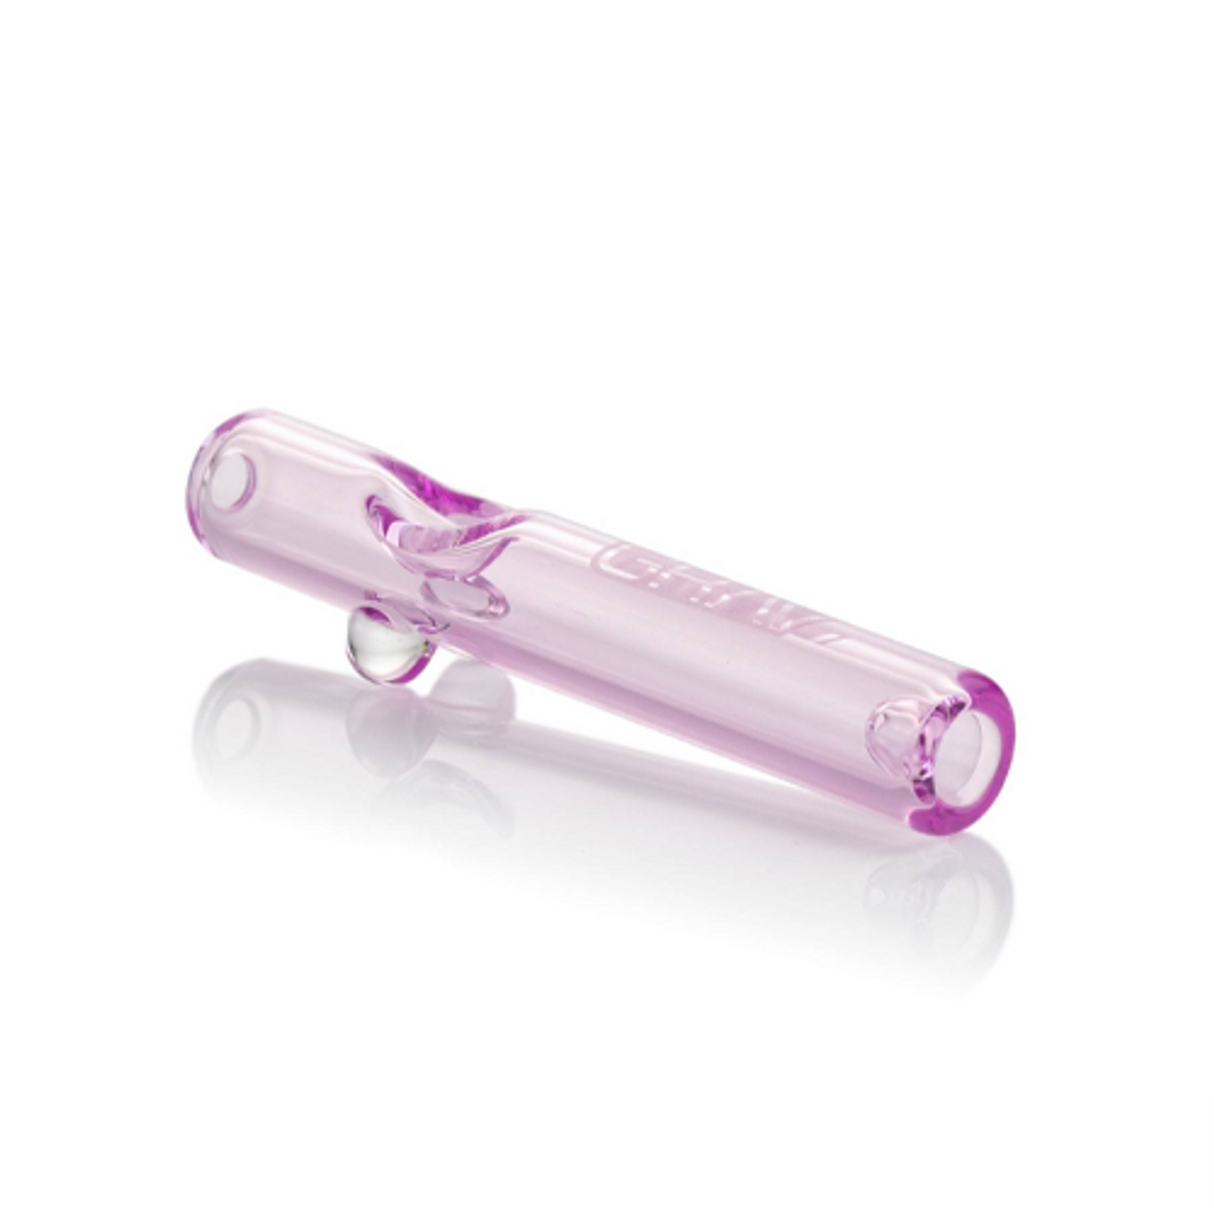 GRAV 5" Mini Steamroller in purple borosilicate glass, compact and portable design